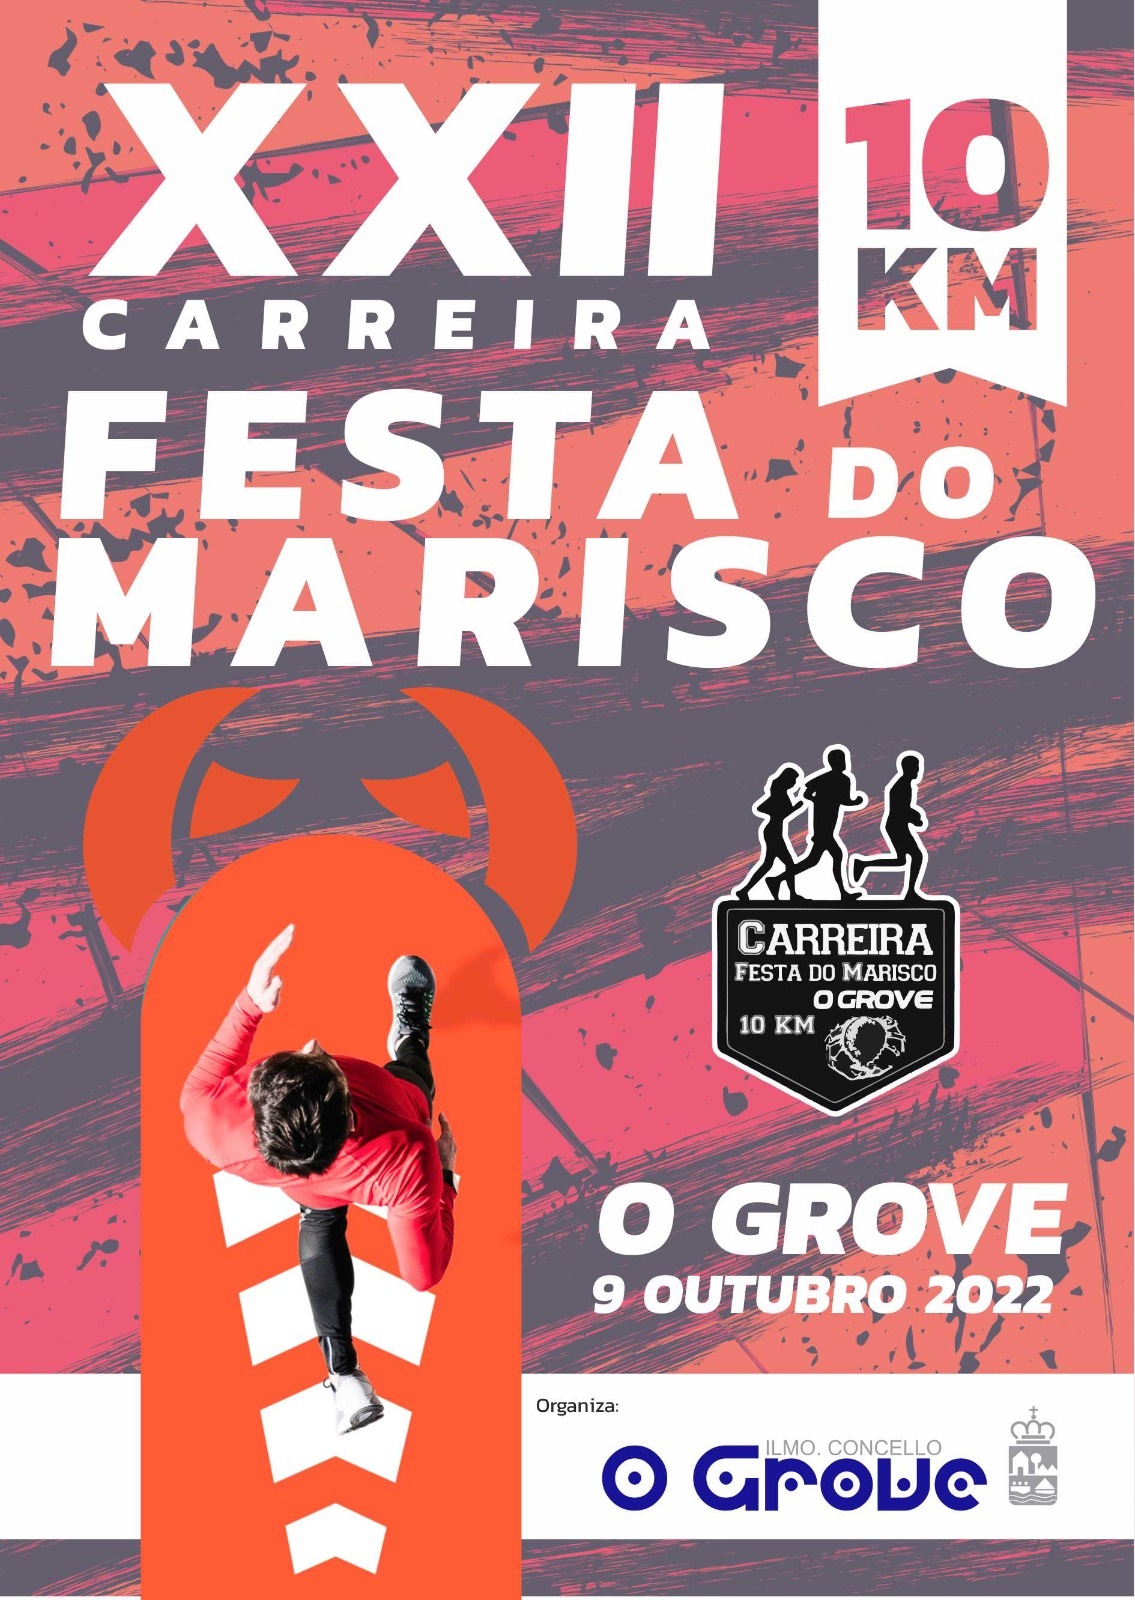 XXII CARREIRA POPULAR FESTA DO MARISCO 2022 - Inscríbete